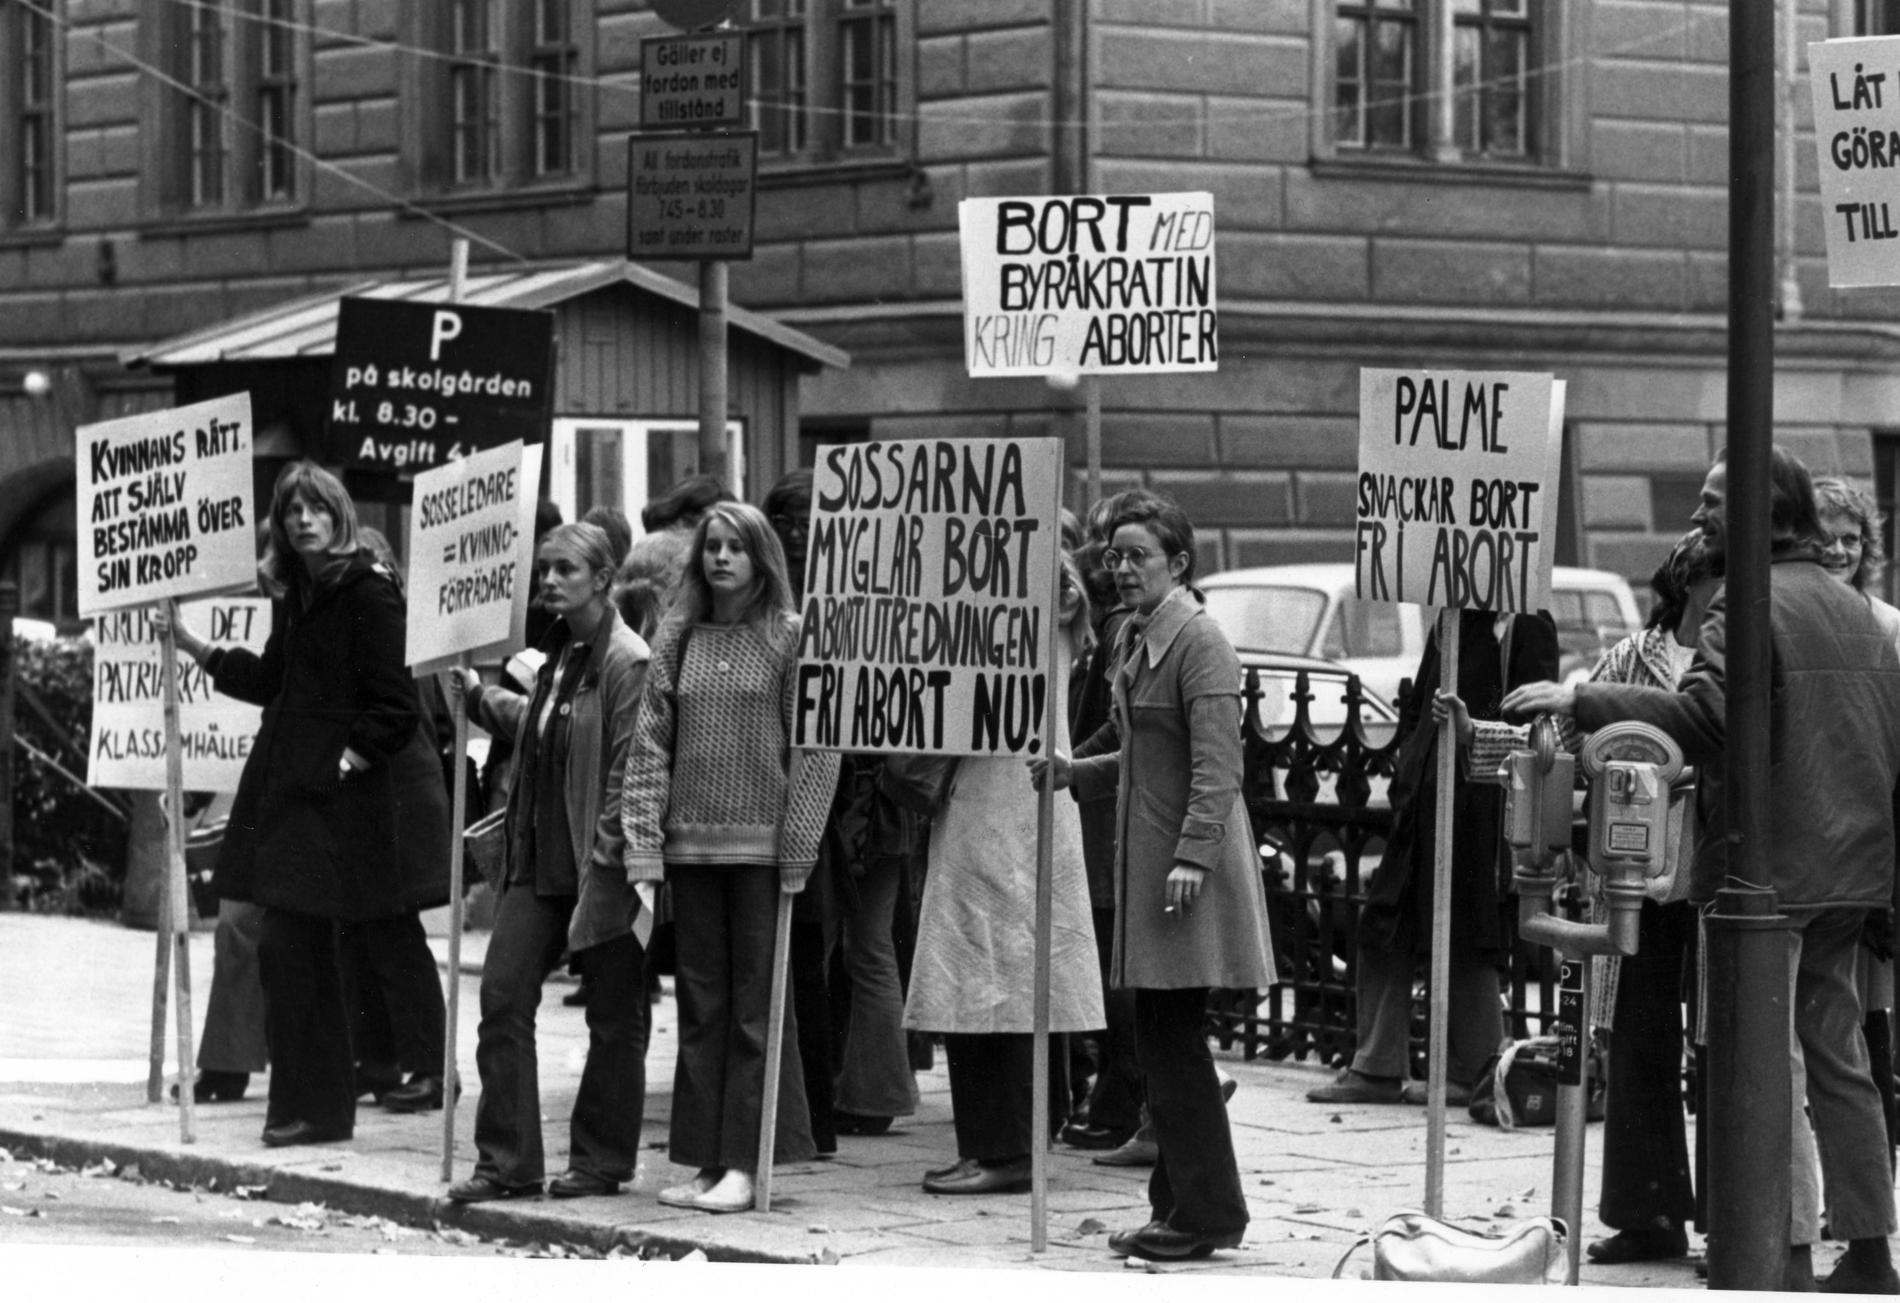 Året är 1972 och Grupp 8 demonstrerar för fri abort.